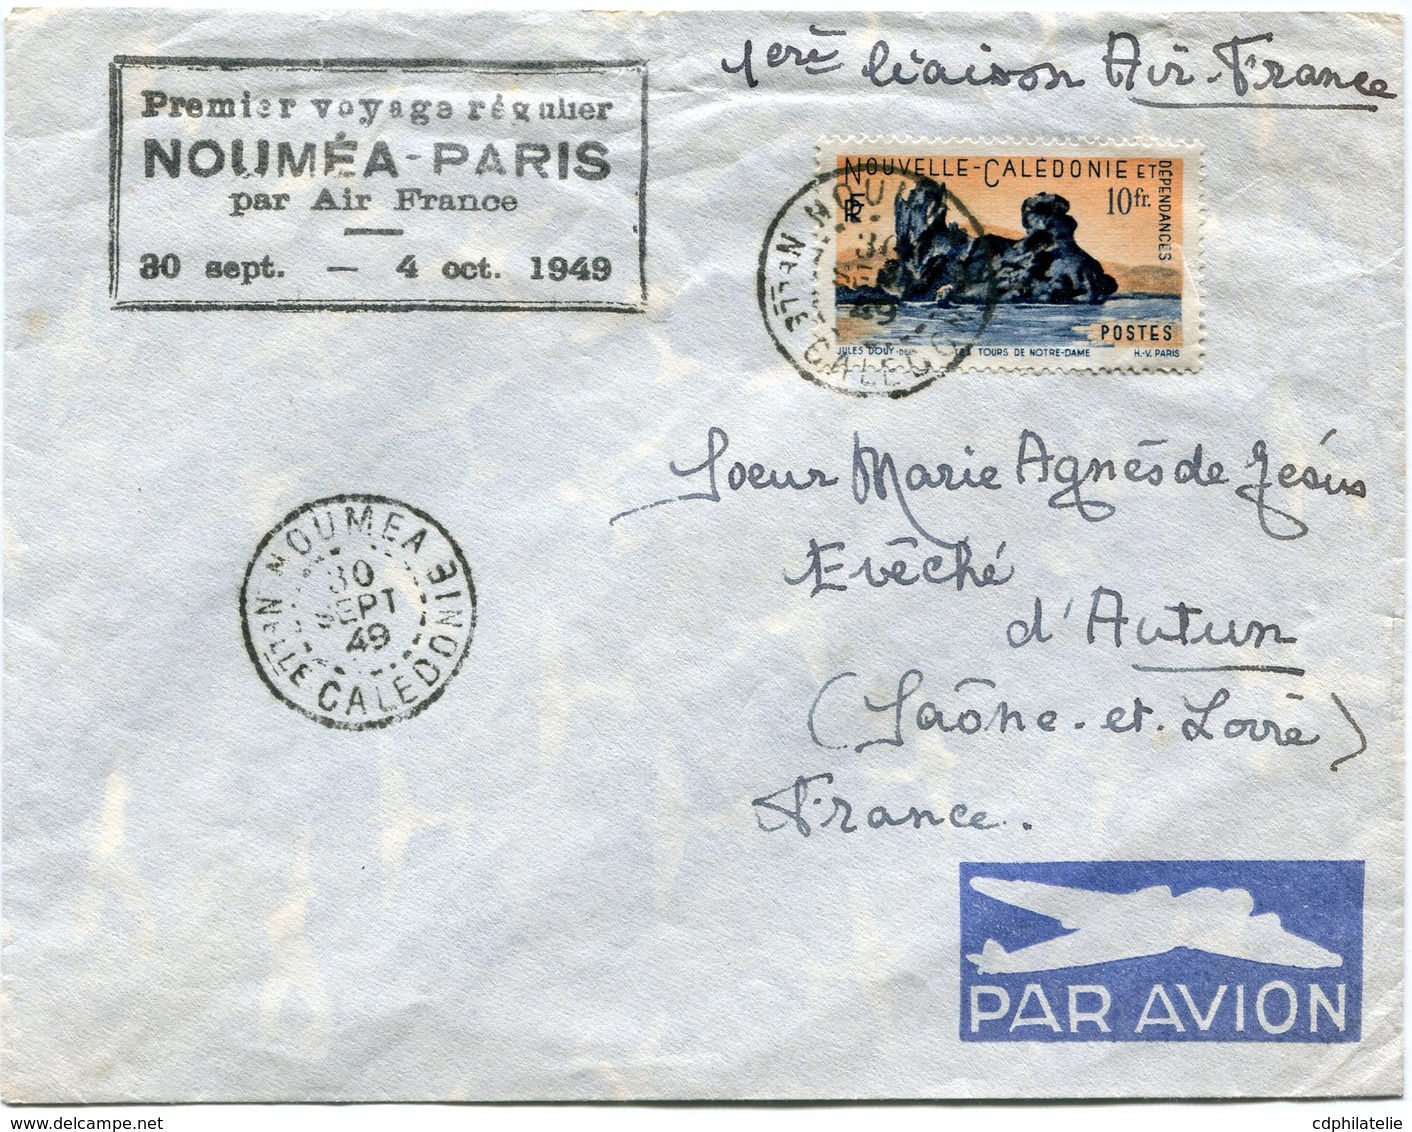 NOUVELLE-CALEDONIE LETTRE PAR AVION AVEC CACHET "PREMIER VOYAGE REGULIER NOUMEA-PARIS PAR AIR FRANCE 30 SEPT-4 OCT 1949" - Cartas & Documentos